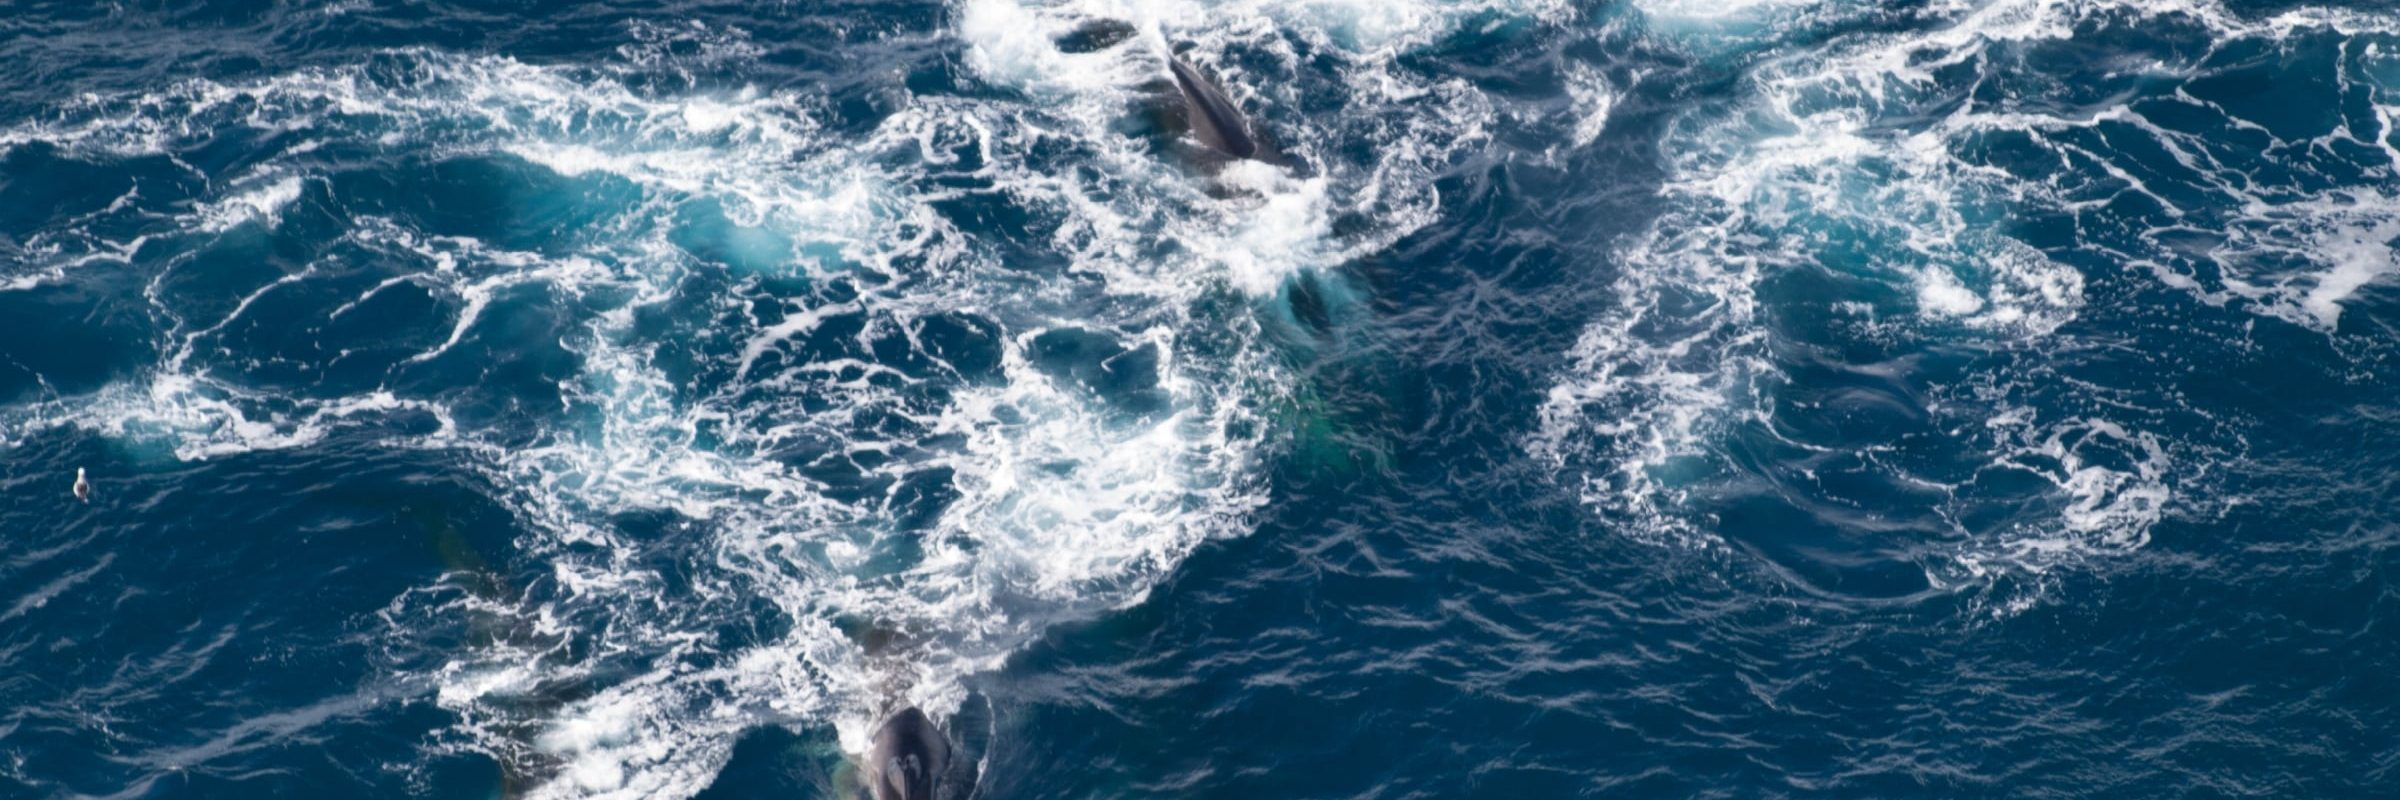 Feeding Fin Whales